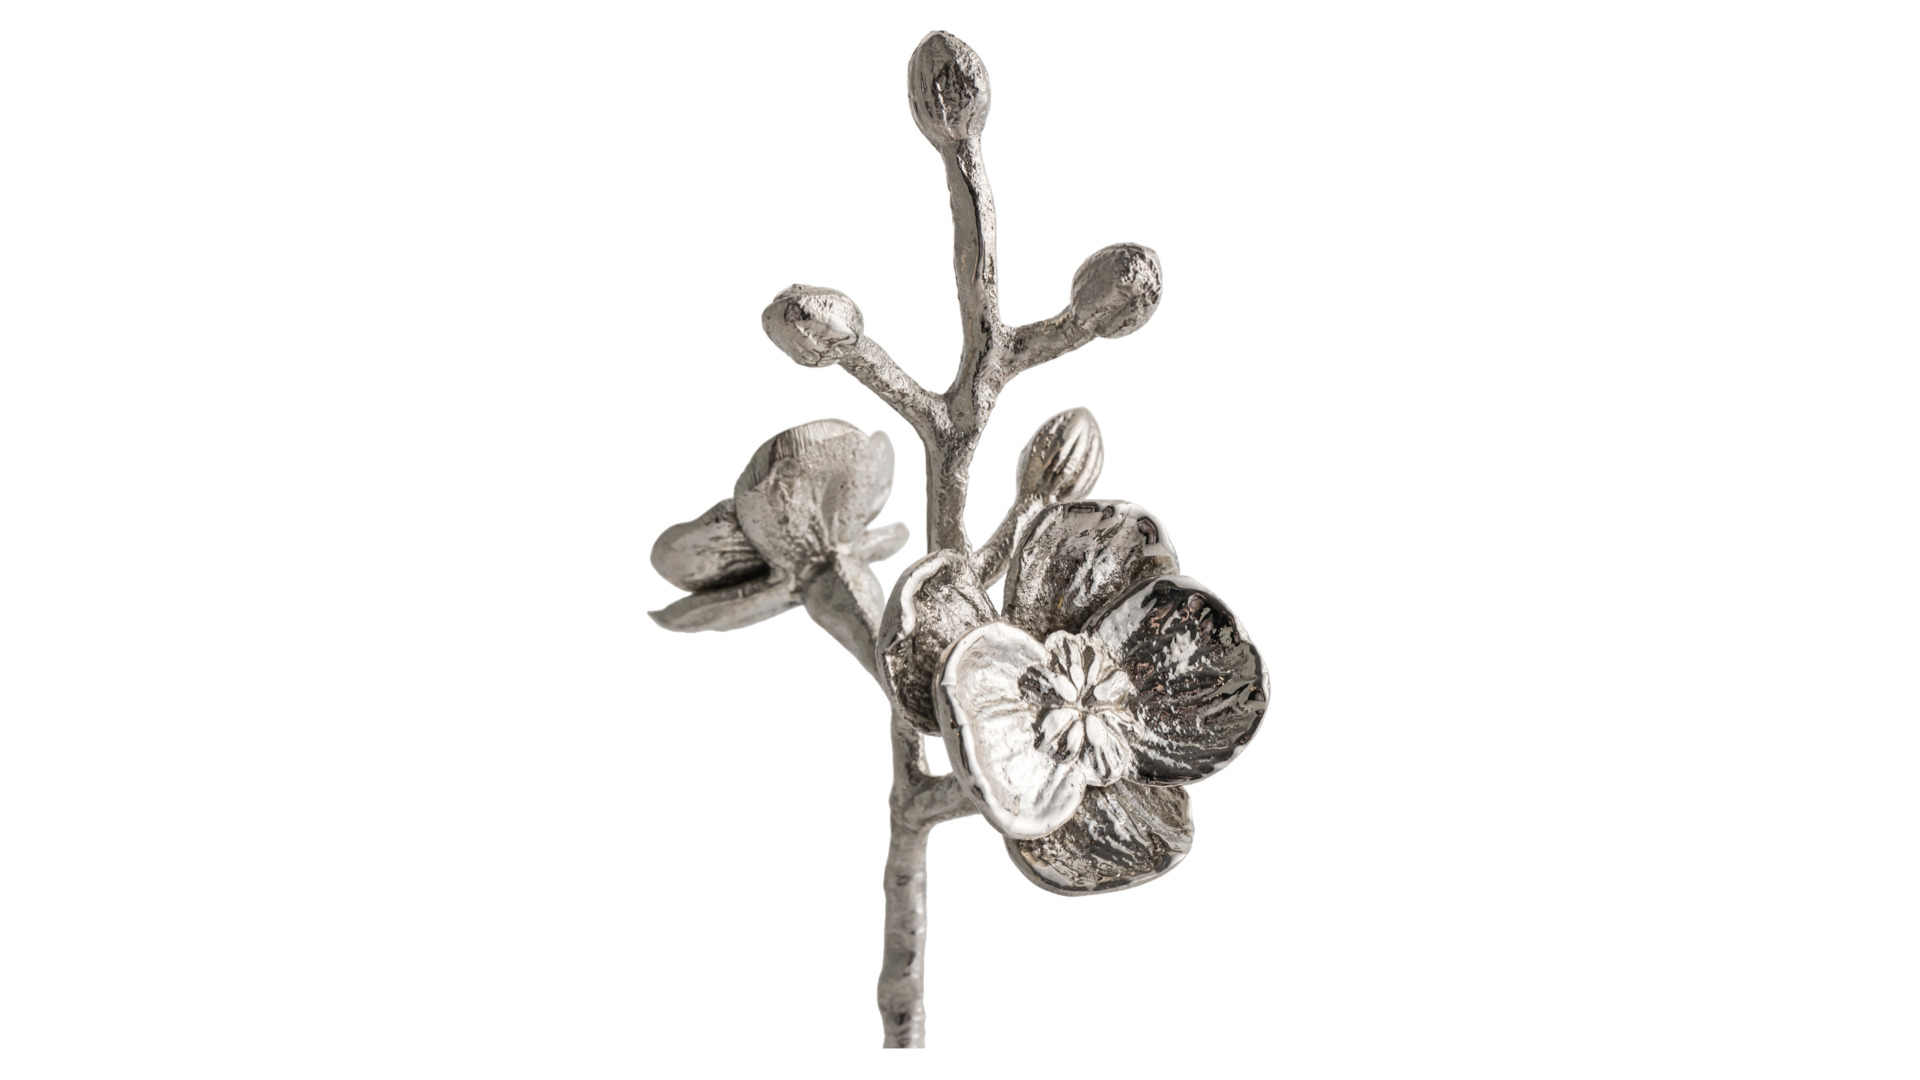 Набор солонка и перечница Michael Aram Белая орхидея 20 см, сталь нержавеющая, фарфор